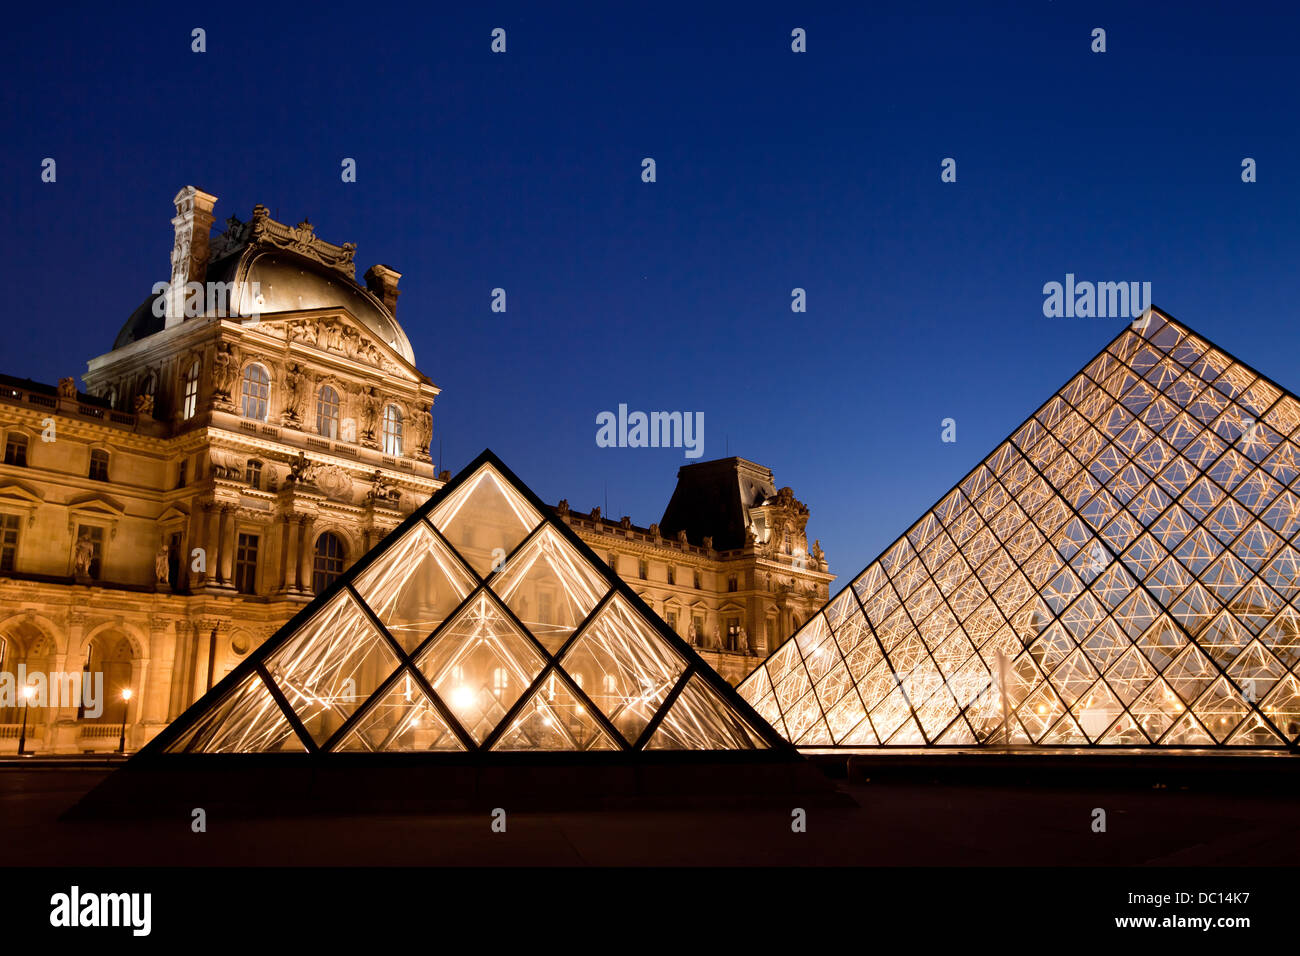 Pyramide du Louvre de nuit Banque D'Images